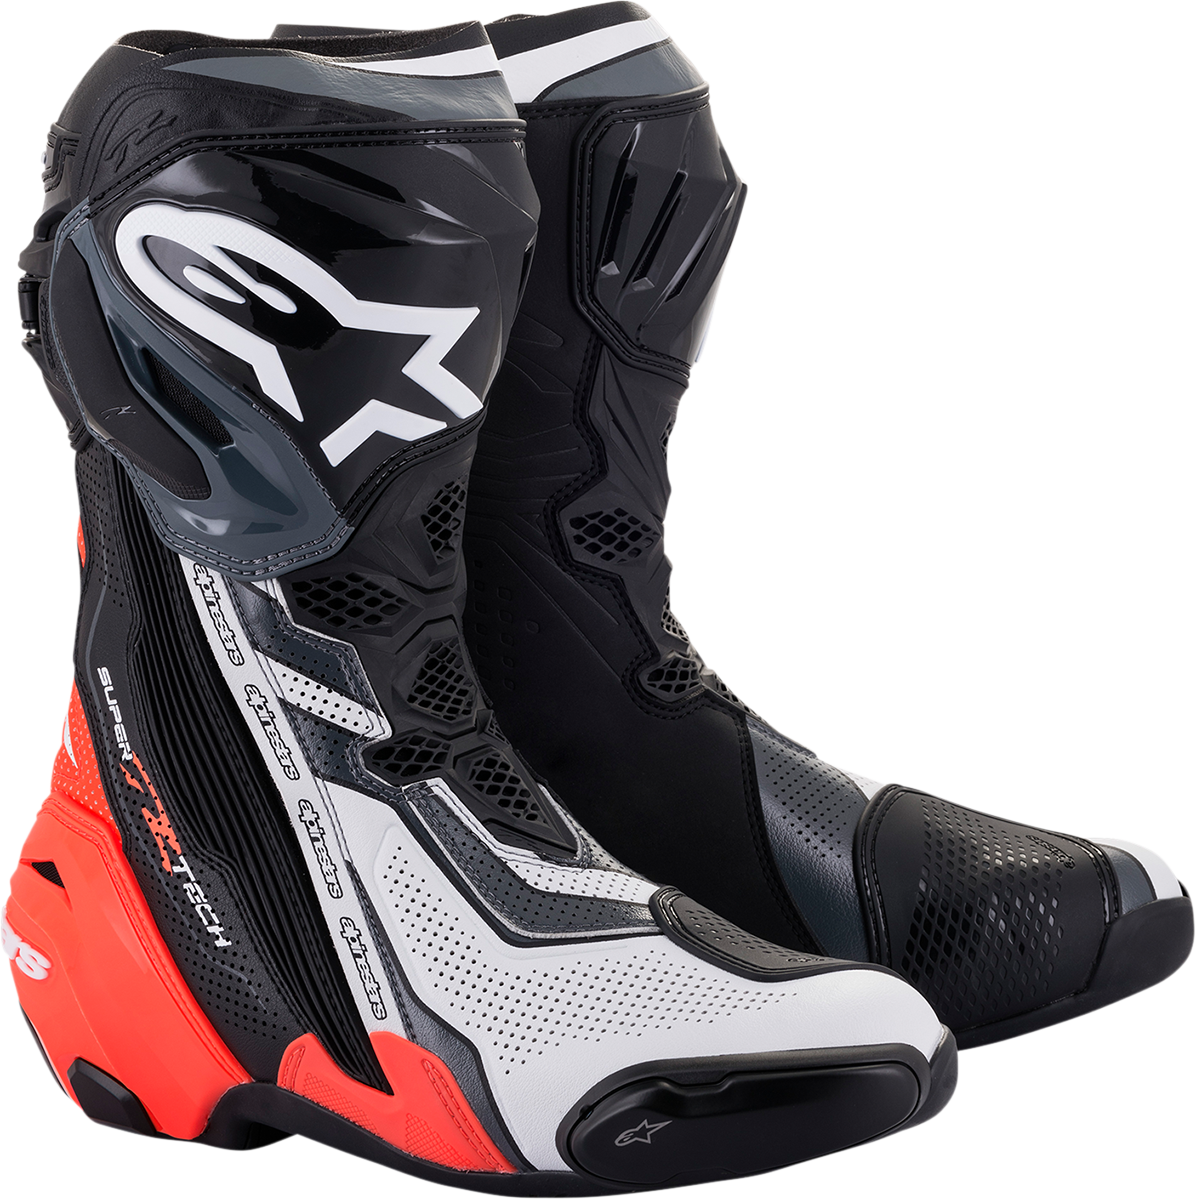 ALPINESTARS Supertech V Boots - Black/Red/White/Gray - US 9.5 / EU 44 2220121-1329-44